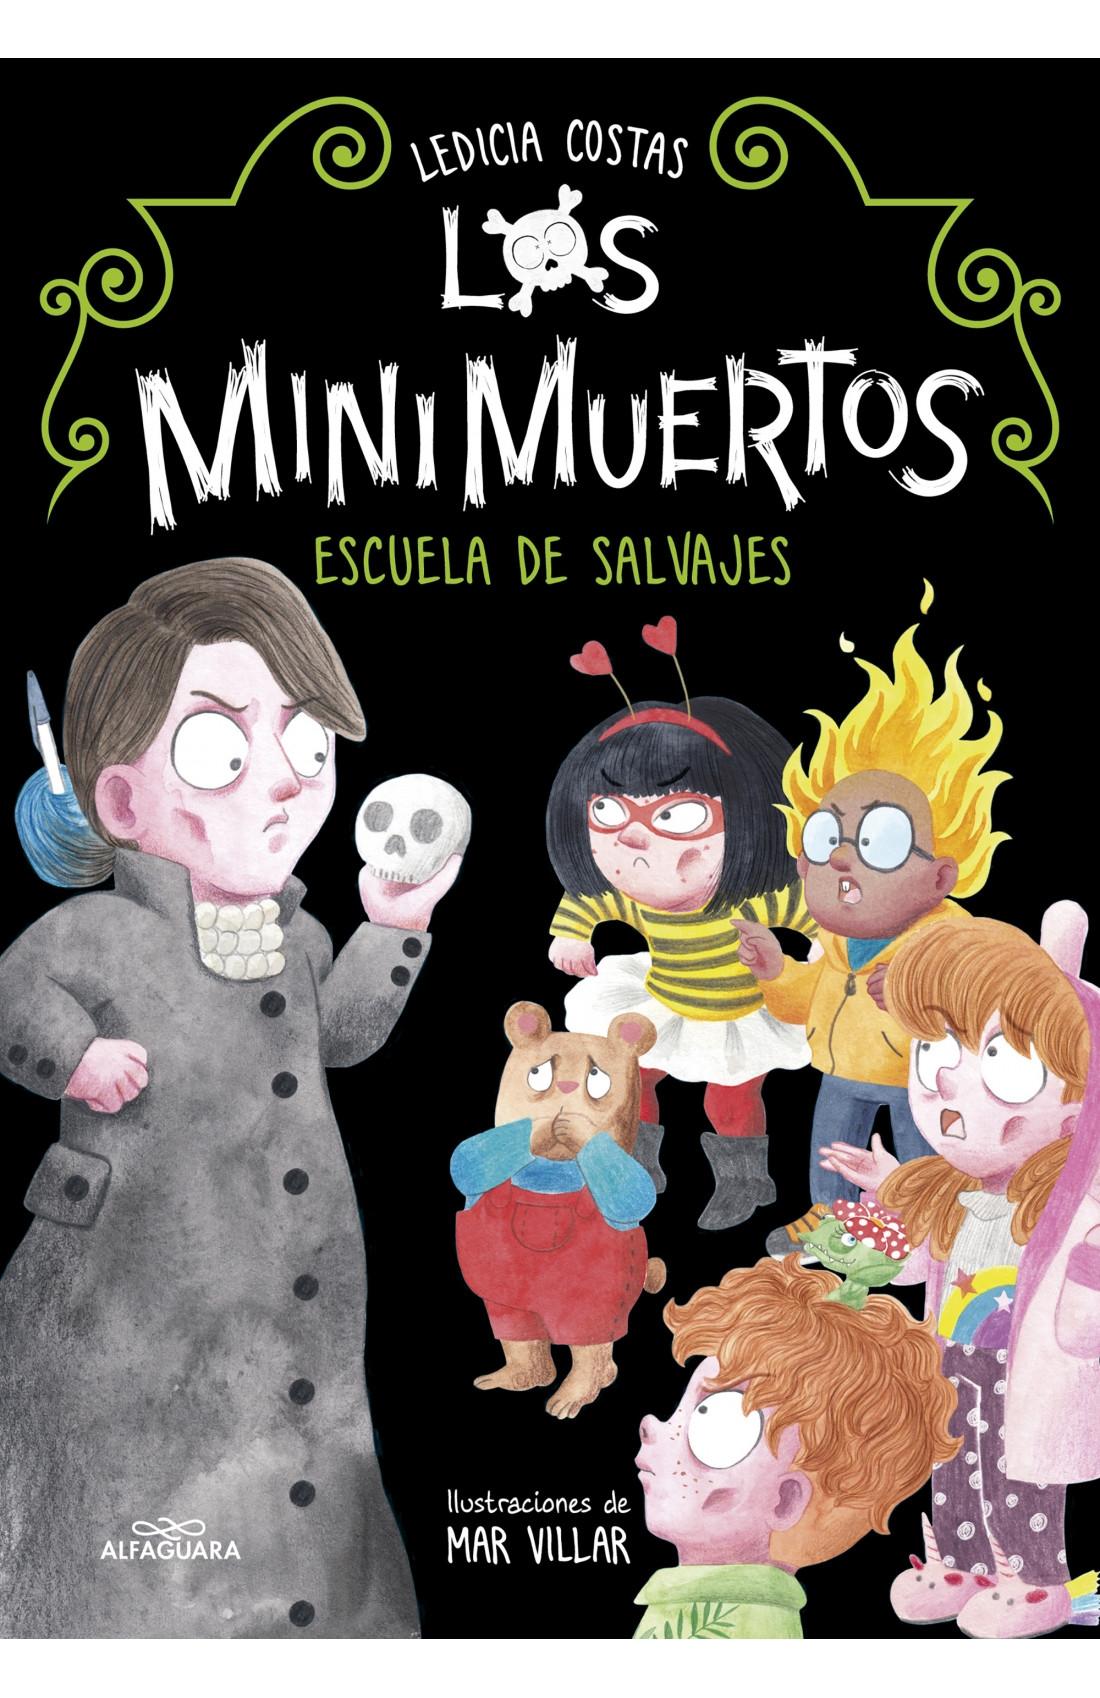 Los Minimuertos 3 "Escuela de Salvajes". 